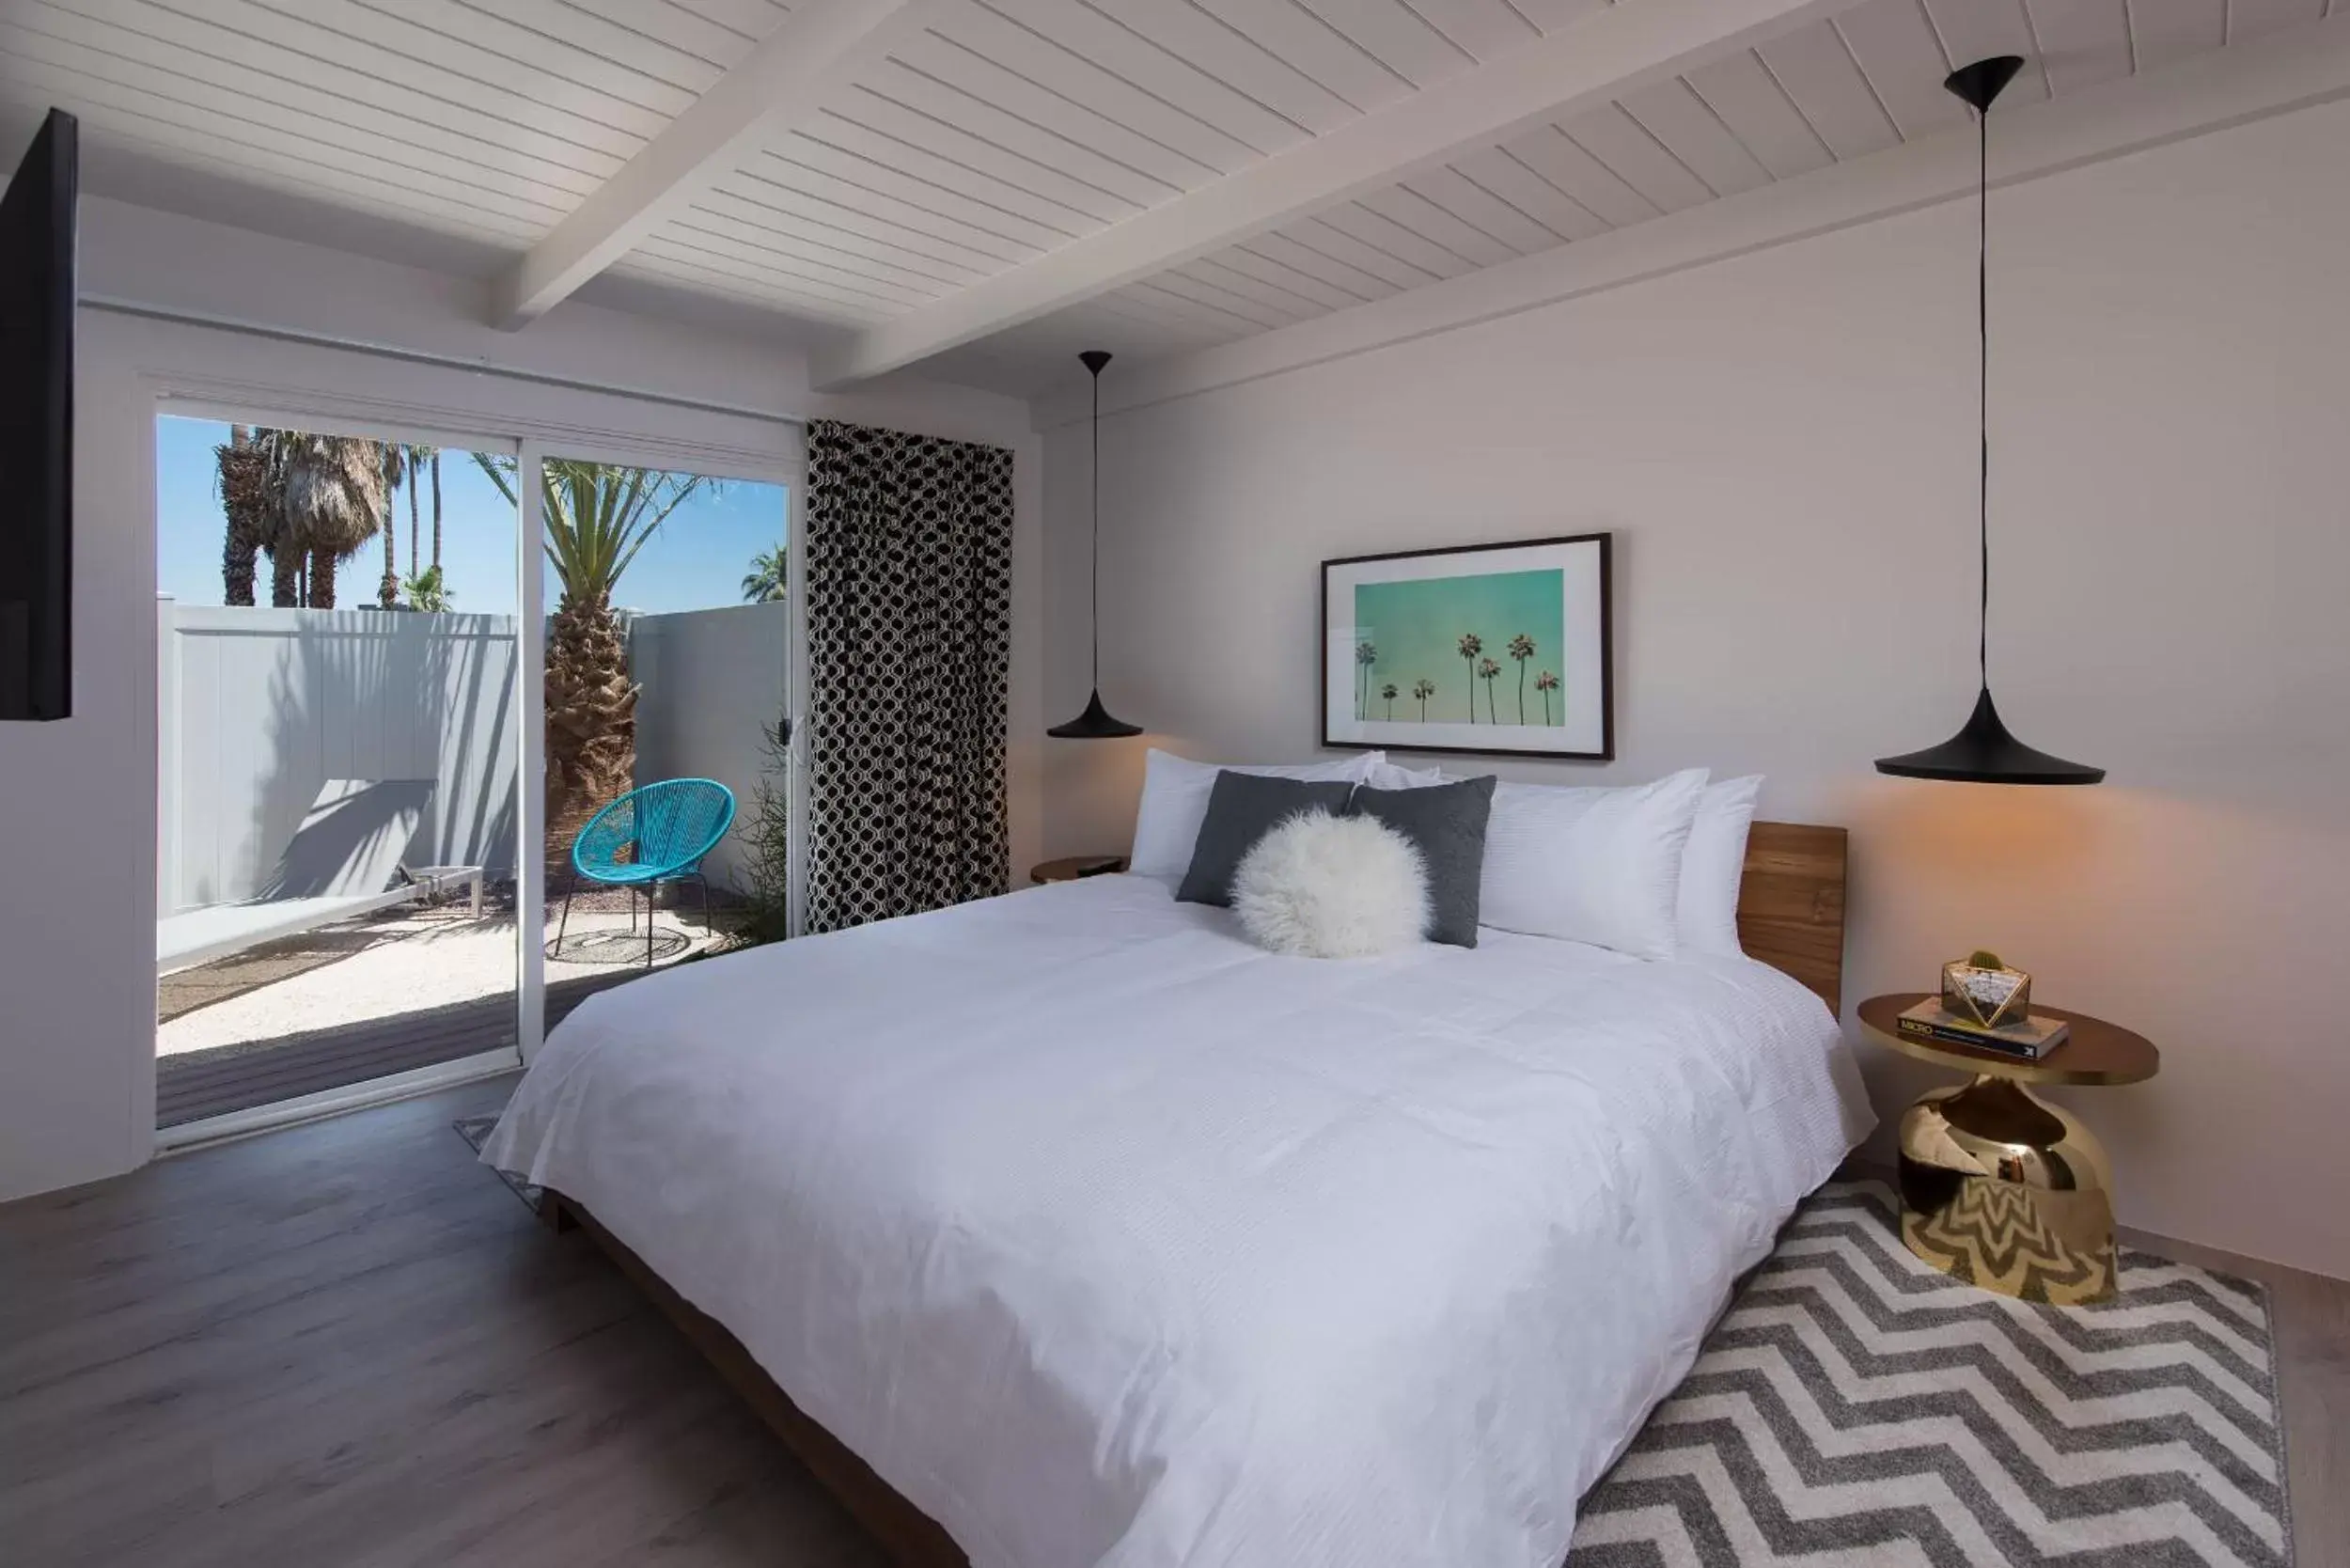 Bedroom, Bed in the Weekend Palm Springs